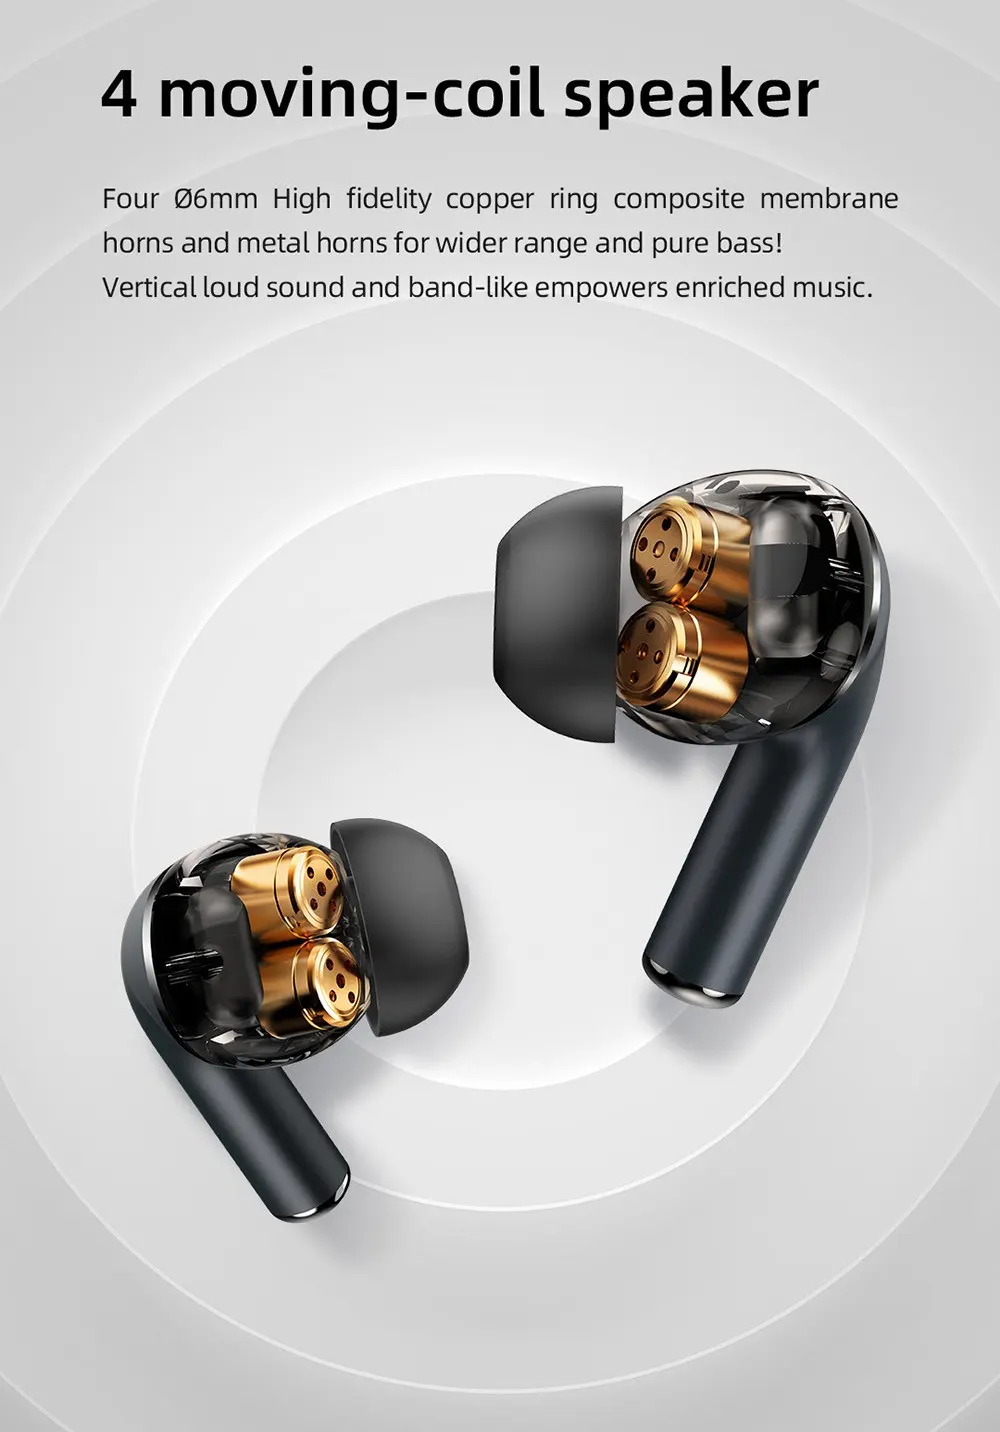 ایرباد بلوتوث میبرو مدل Mibro M1 TWS Bluetooth Earphones